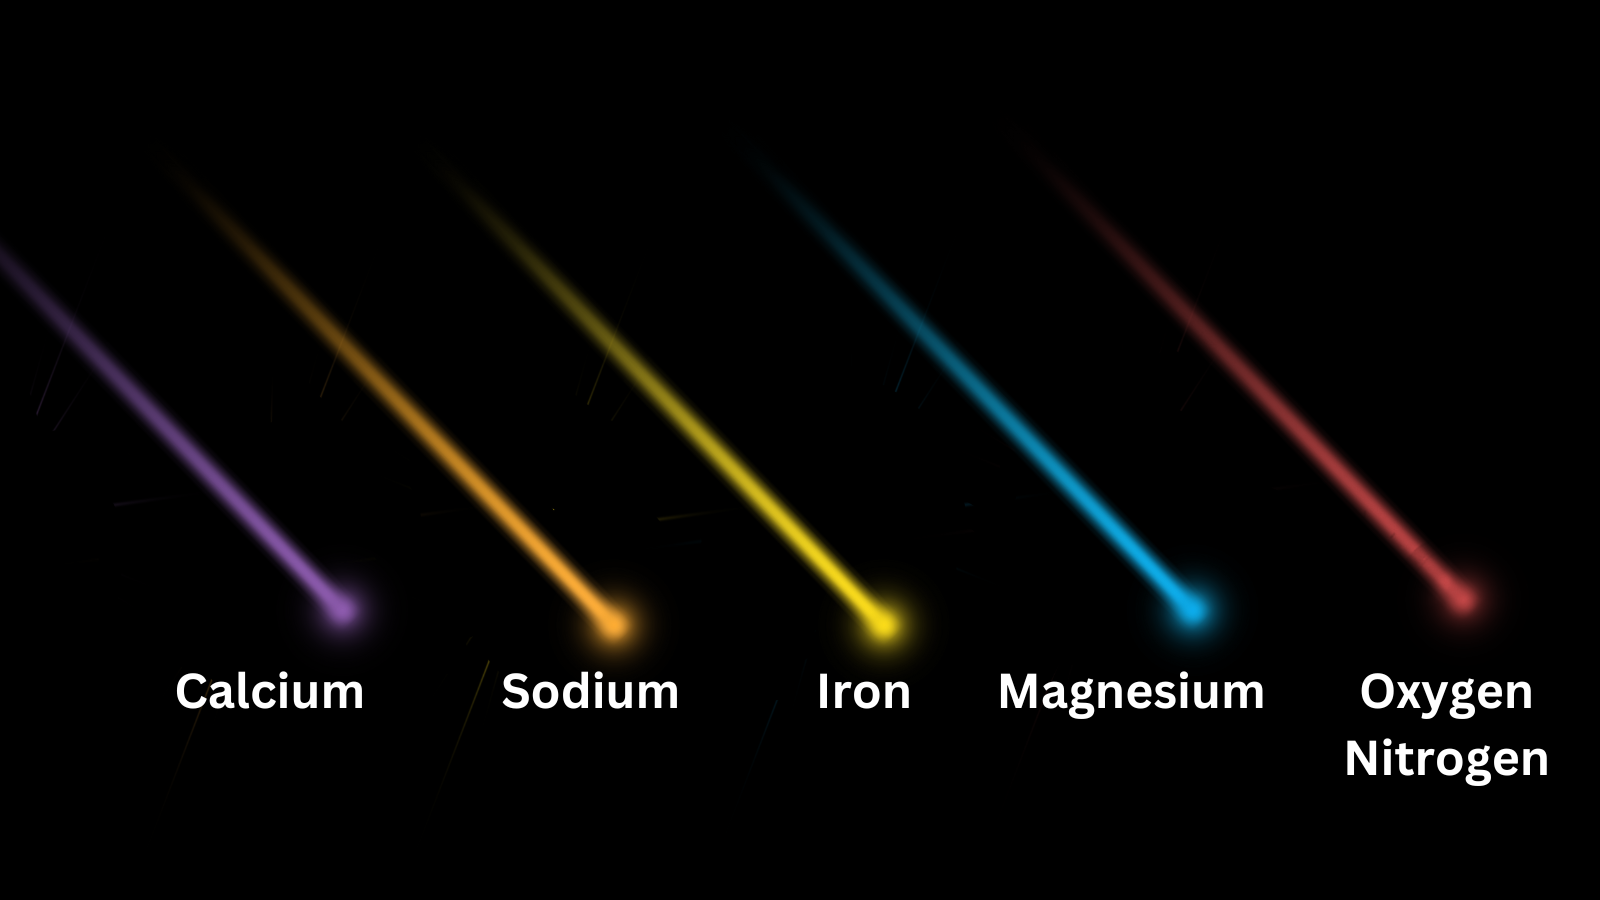 Ilustrasi menunjukkan perbedaan warna bola api dan bahan kimia yang ditunjukkannya